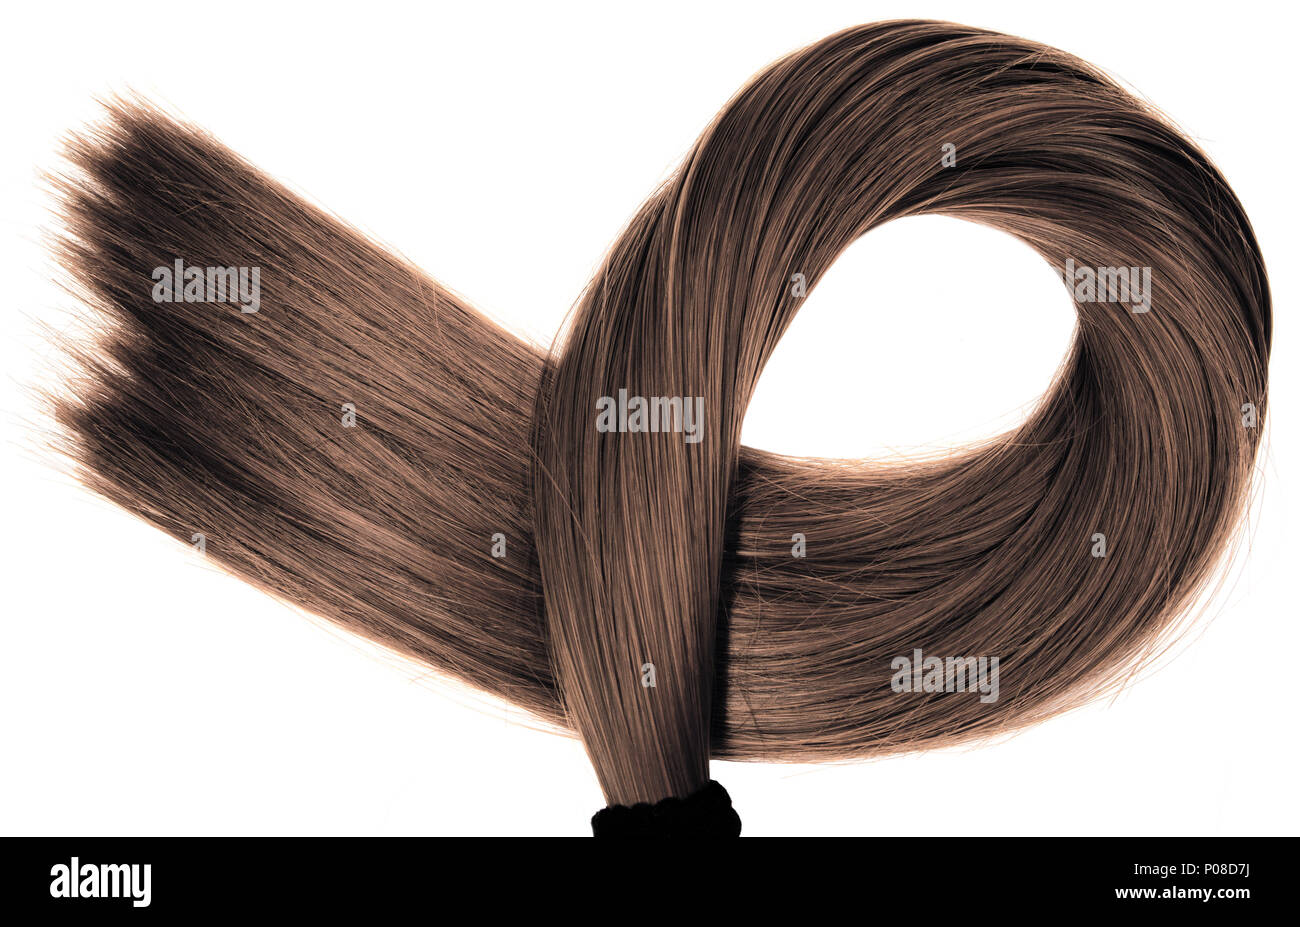 Largo recto sano ponytail cabello marrón sobre fondo blanco. Foto de stock